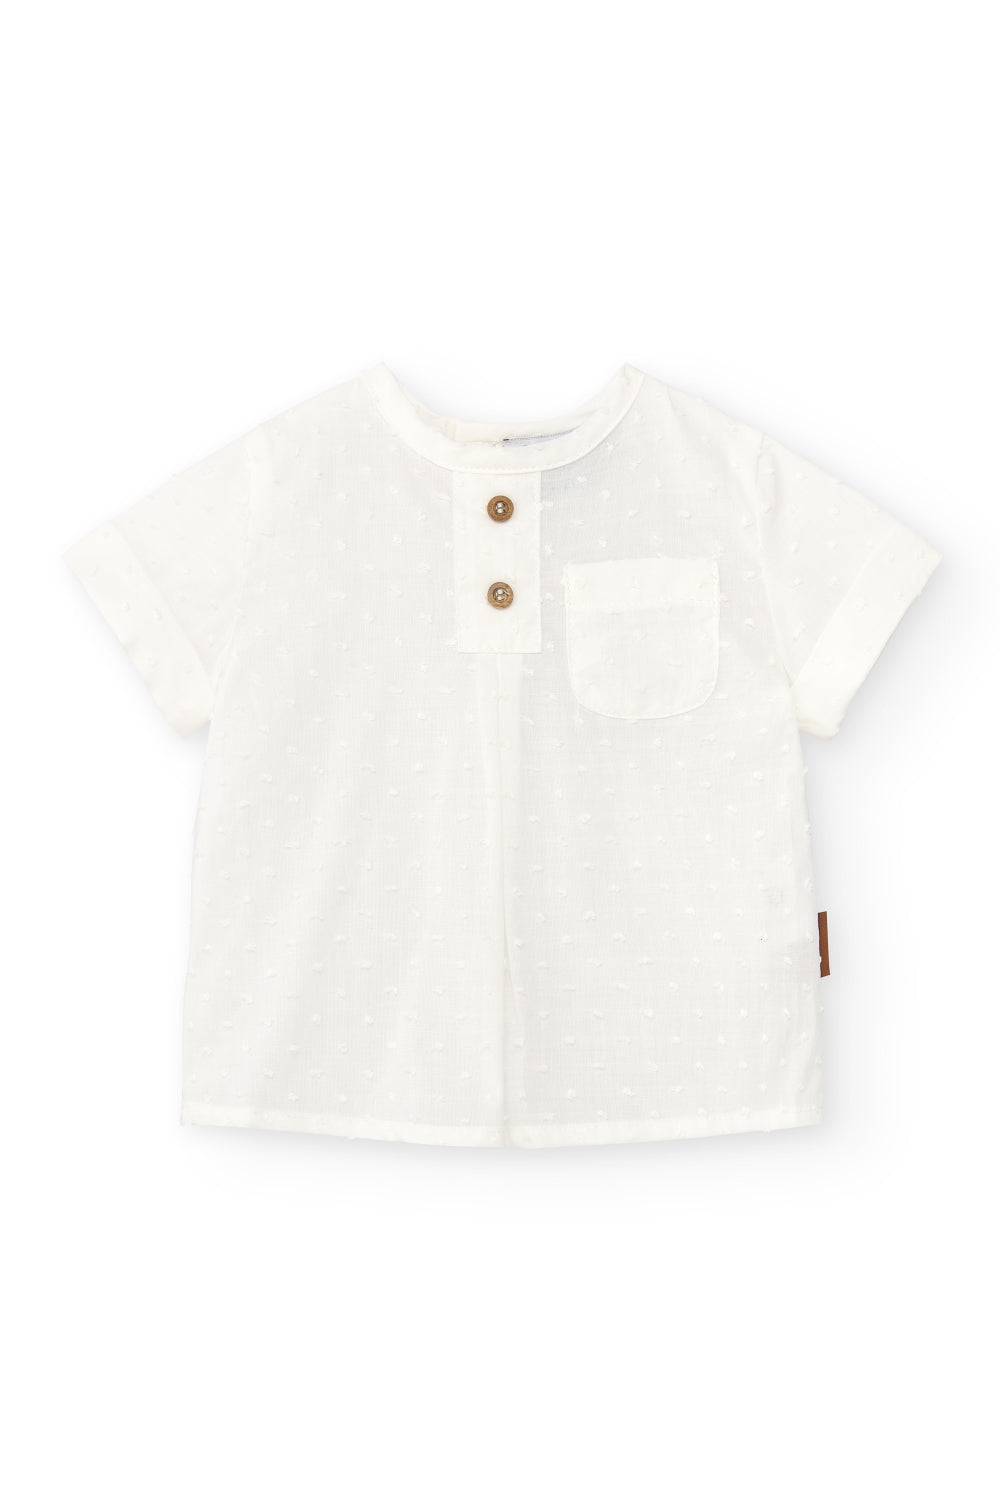 Camisa de bebé crudo Cocote & Charanga VERANO/Outlet